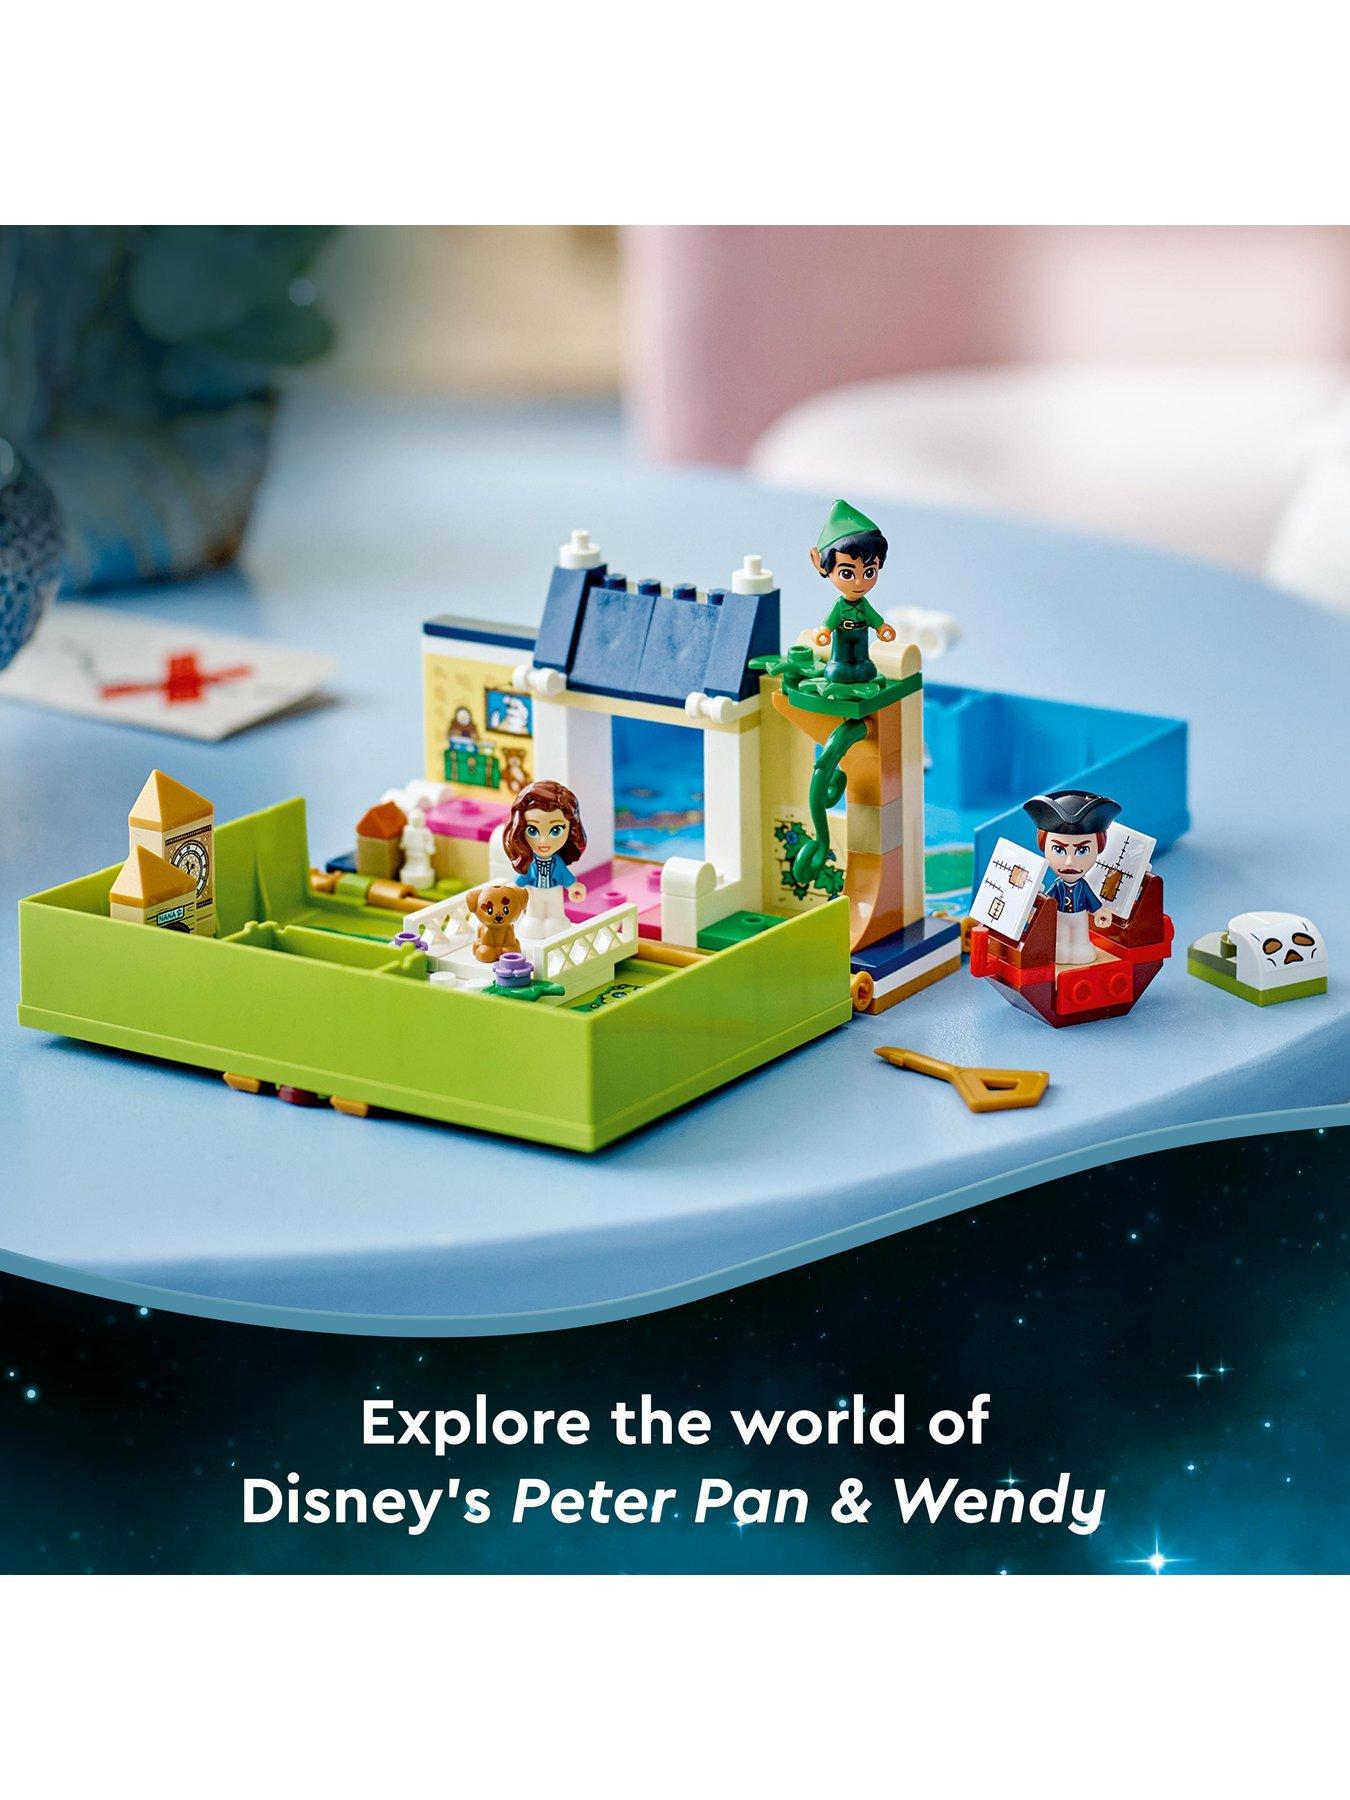 Peter Pan & Wendy's Storybook Adventure